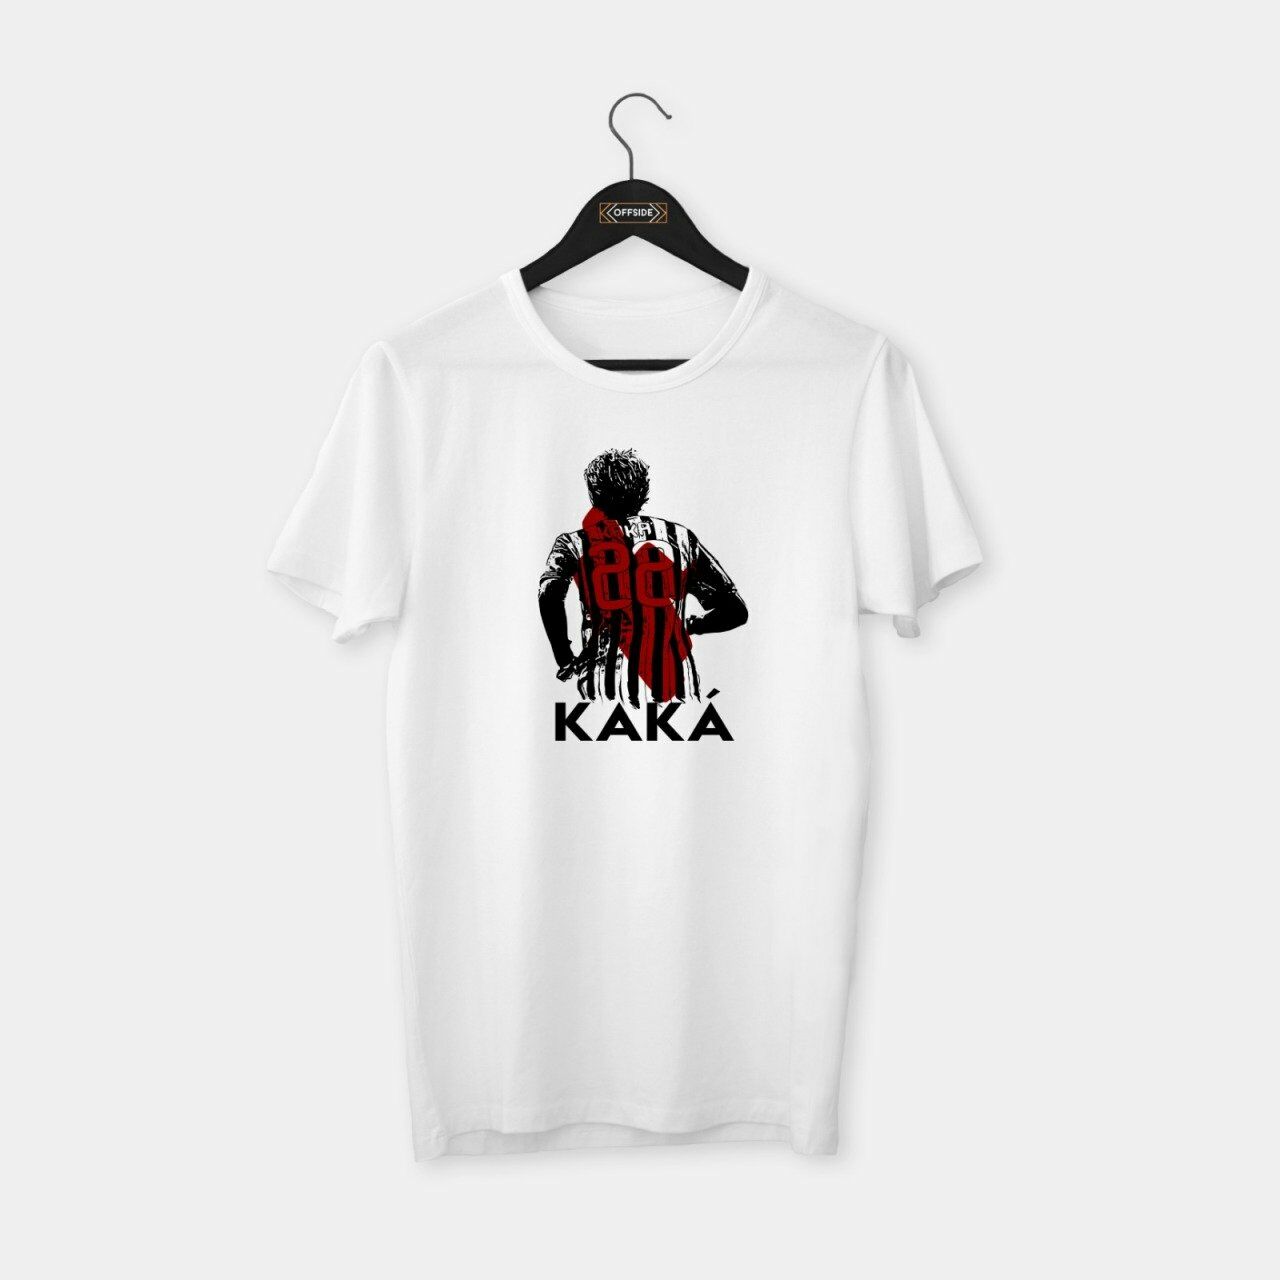 Kaka T-shirt